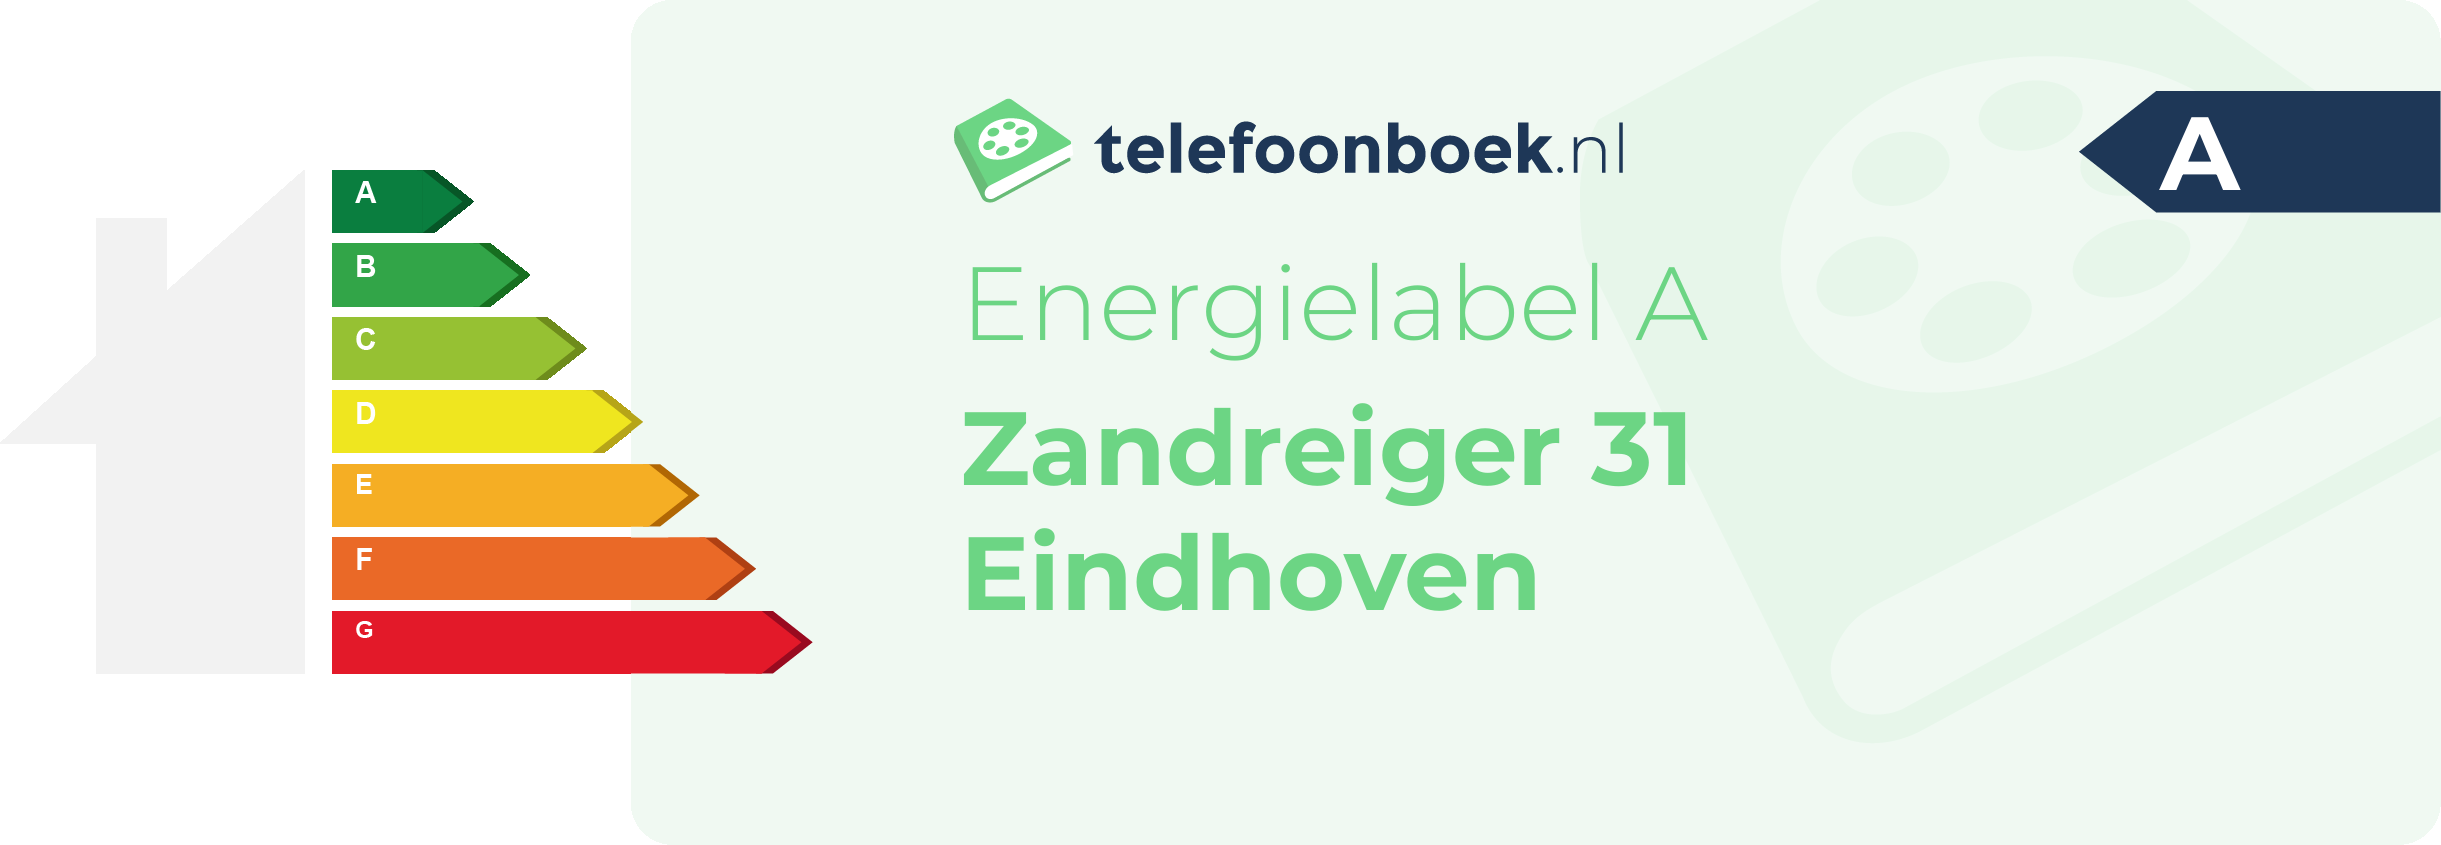 Energielabel Zandreiger 31 Eindhoven